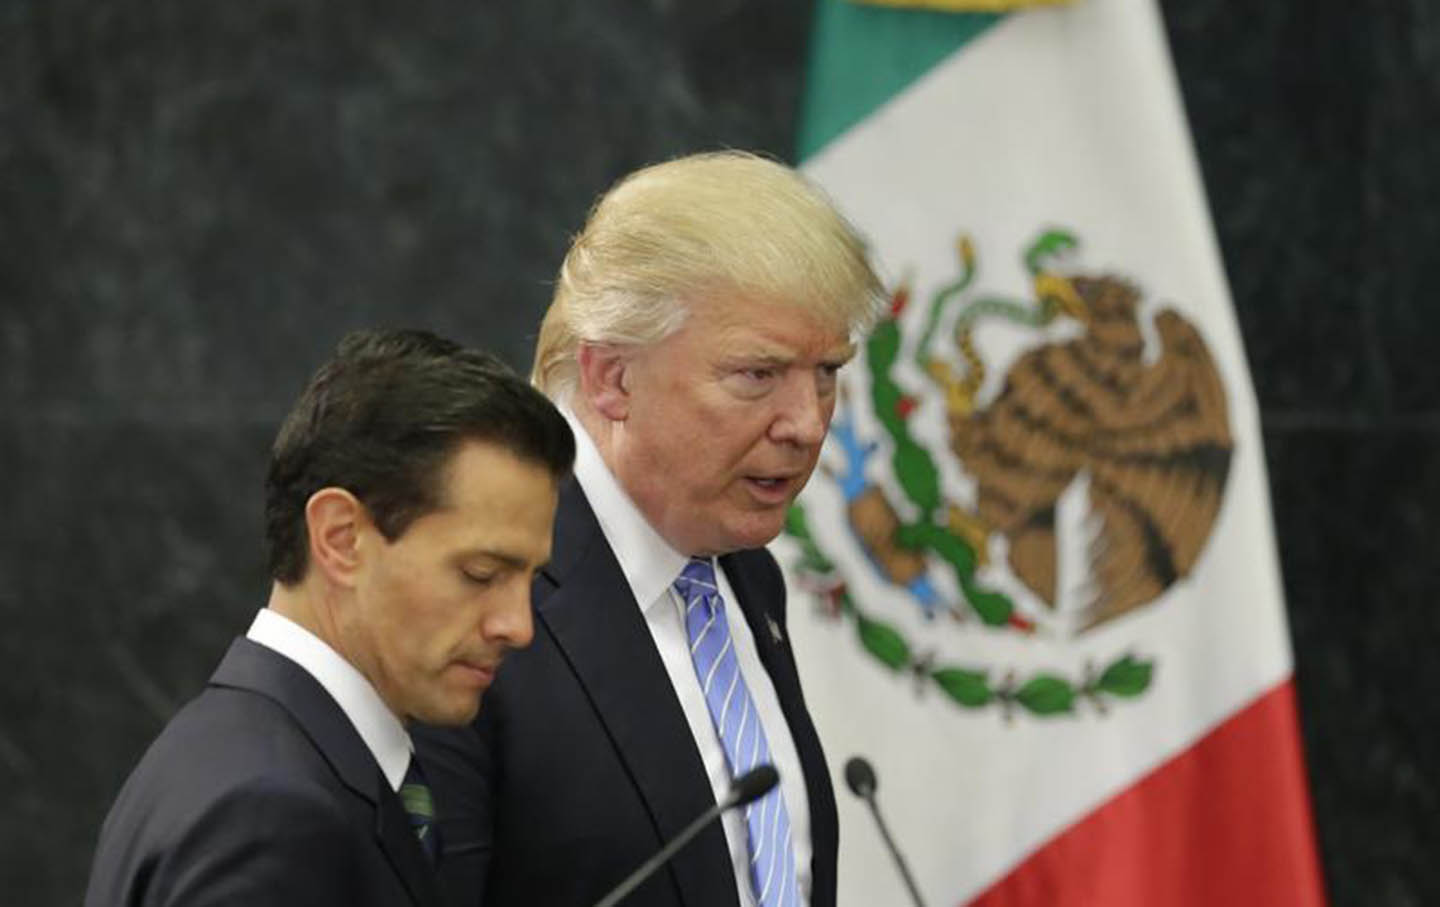 Trump and Peña Nieto